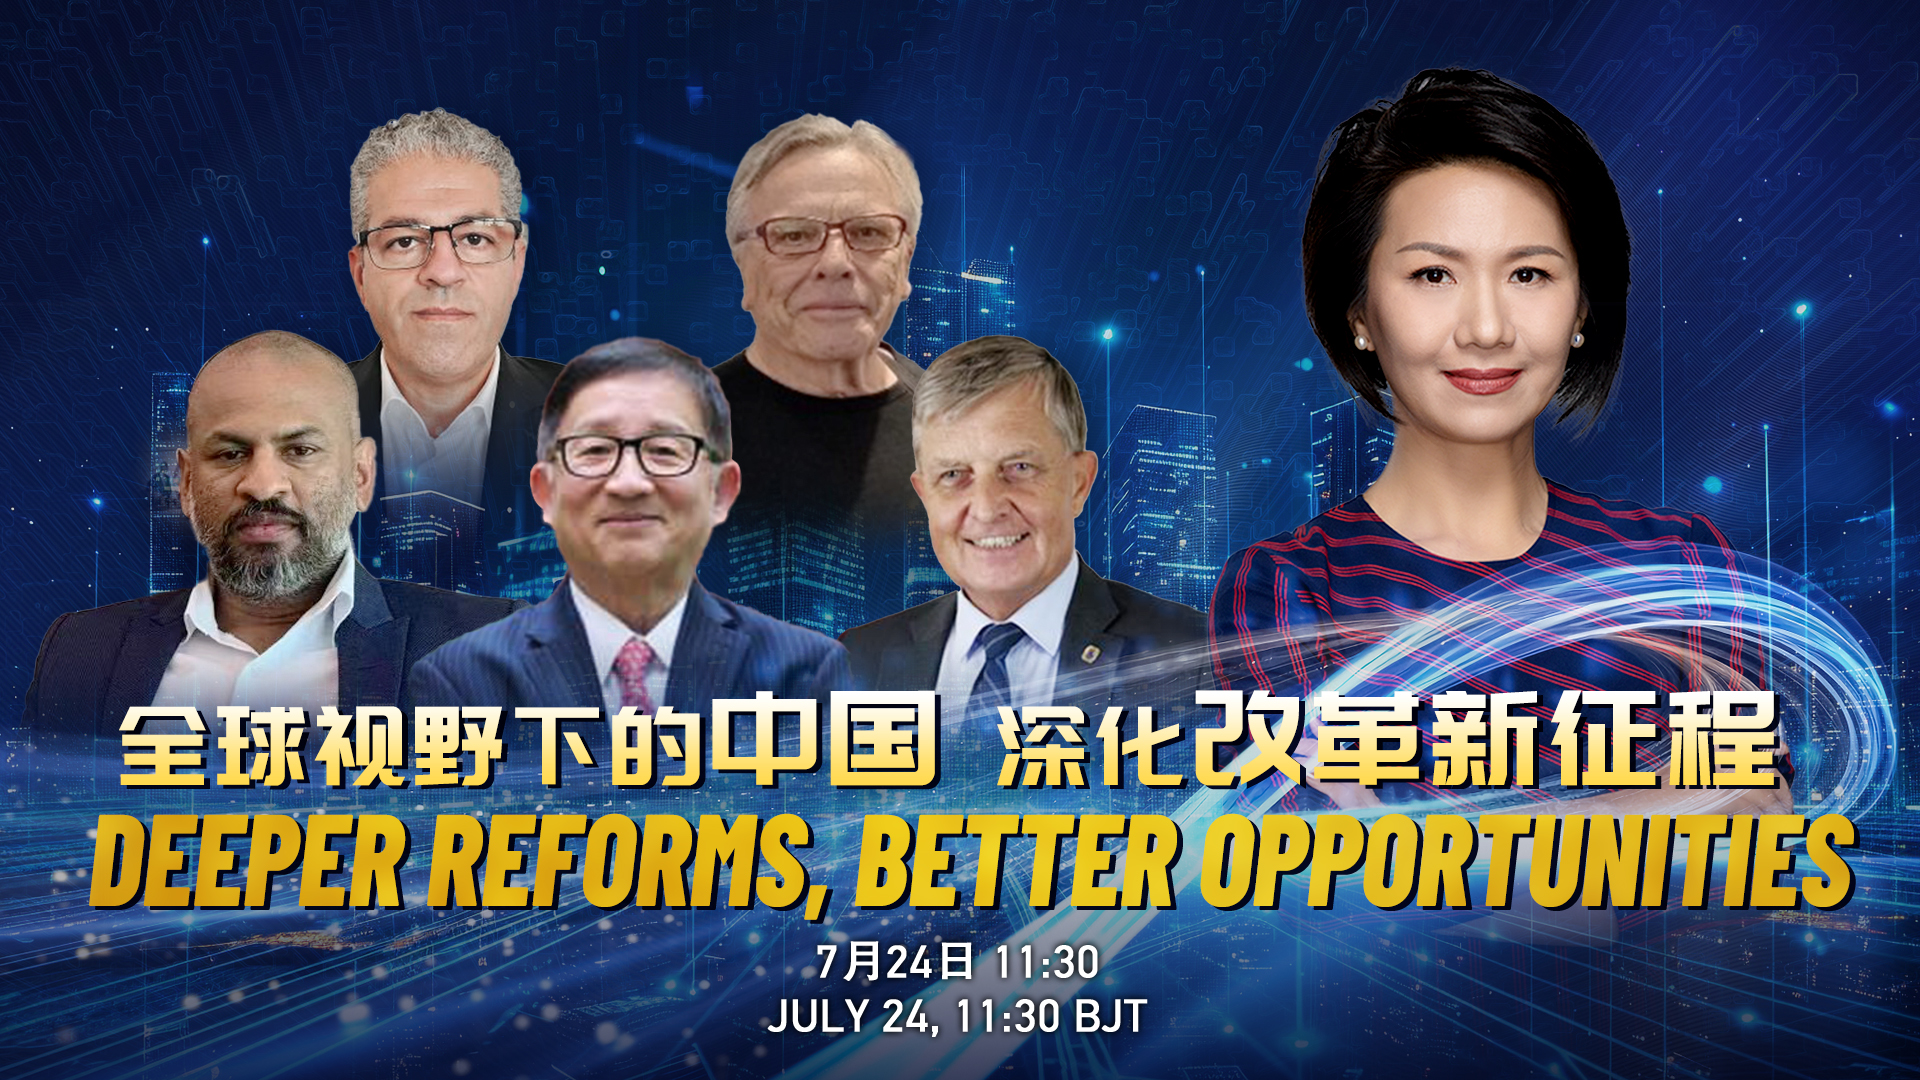 Watch: Deeper reforms, better opportunities